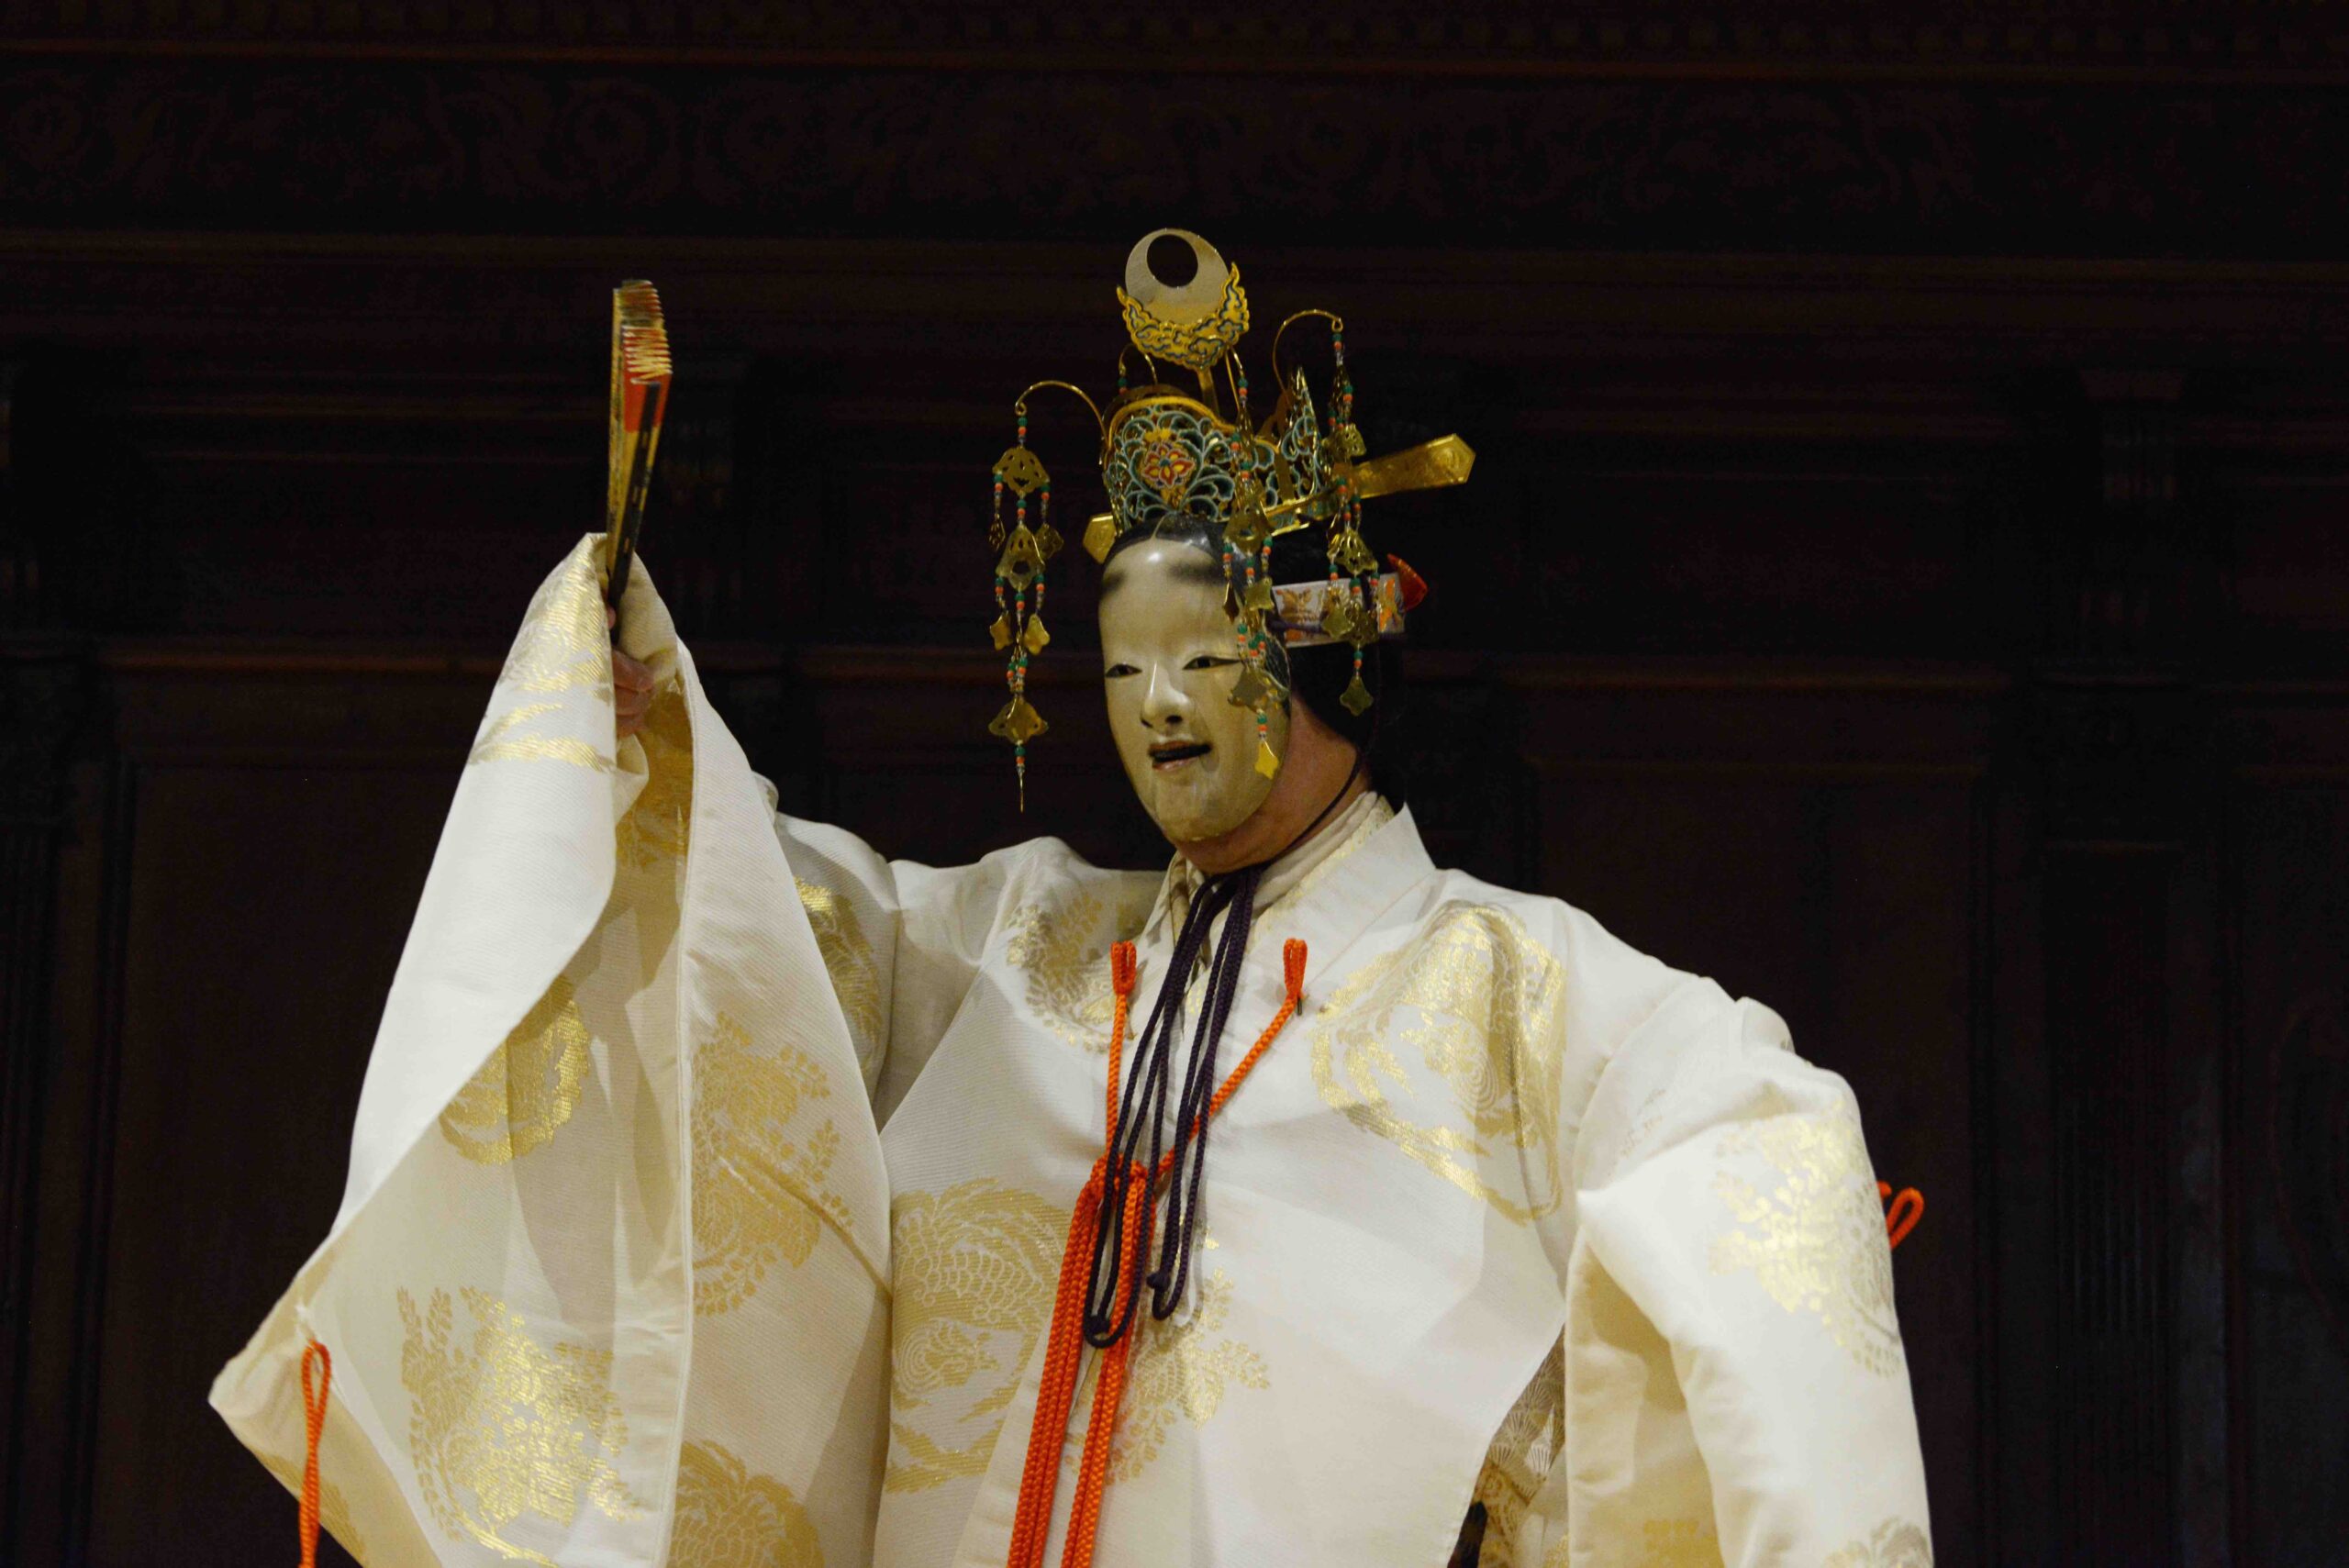 Hagoromo, lo spettacolo teatrale giapponese che combina l’uso di maschere, movimento e musica con l’attore Yamai Tsunao